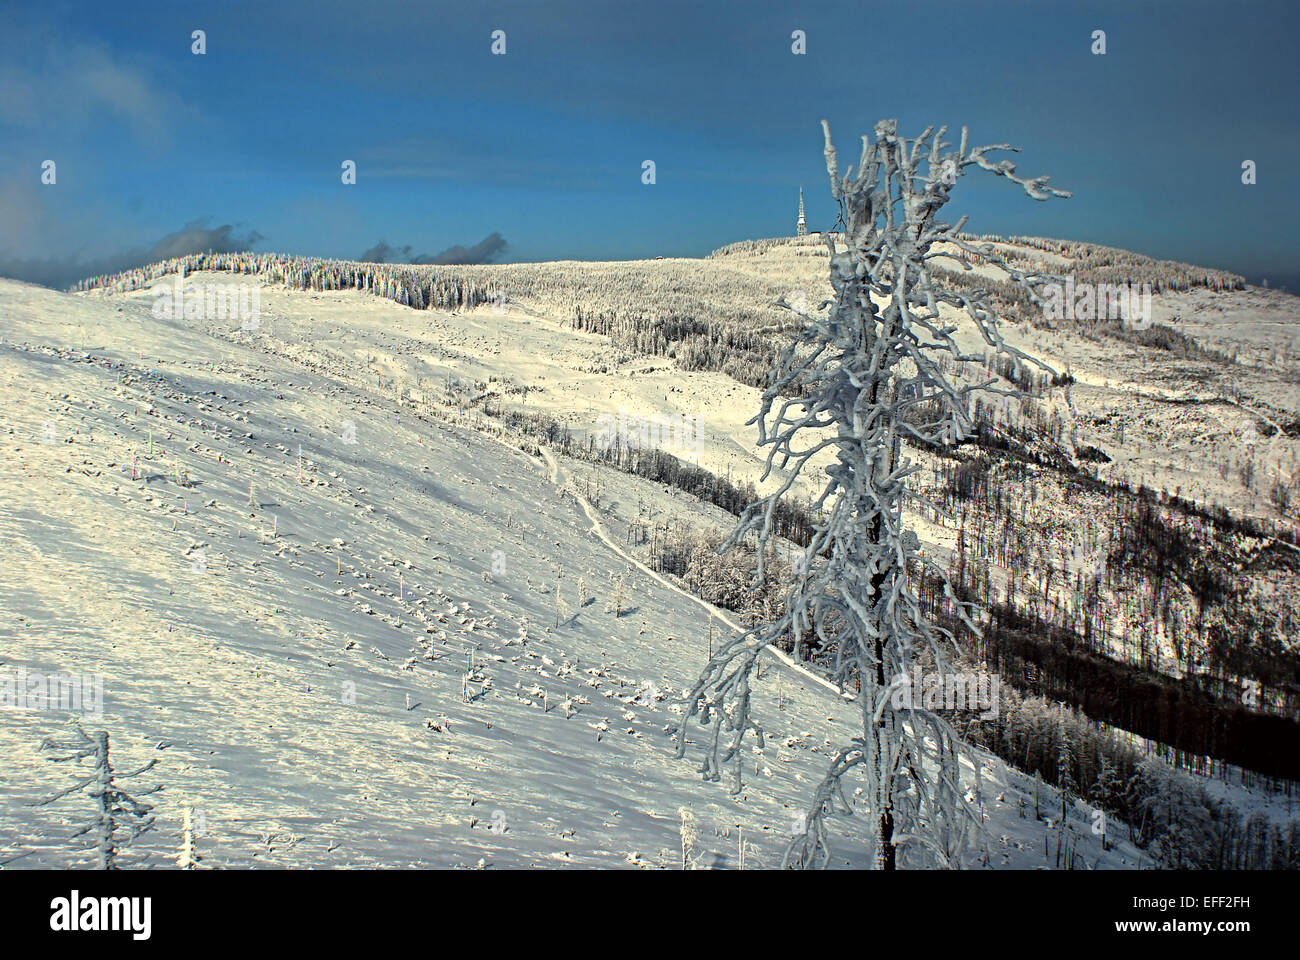 Male Skrzyczne and Skrzyczne hill in Beskid Slaski from Malinowska Skala during winter day with blue sky Stock Photo